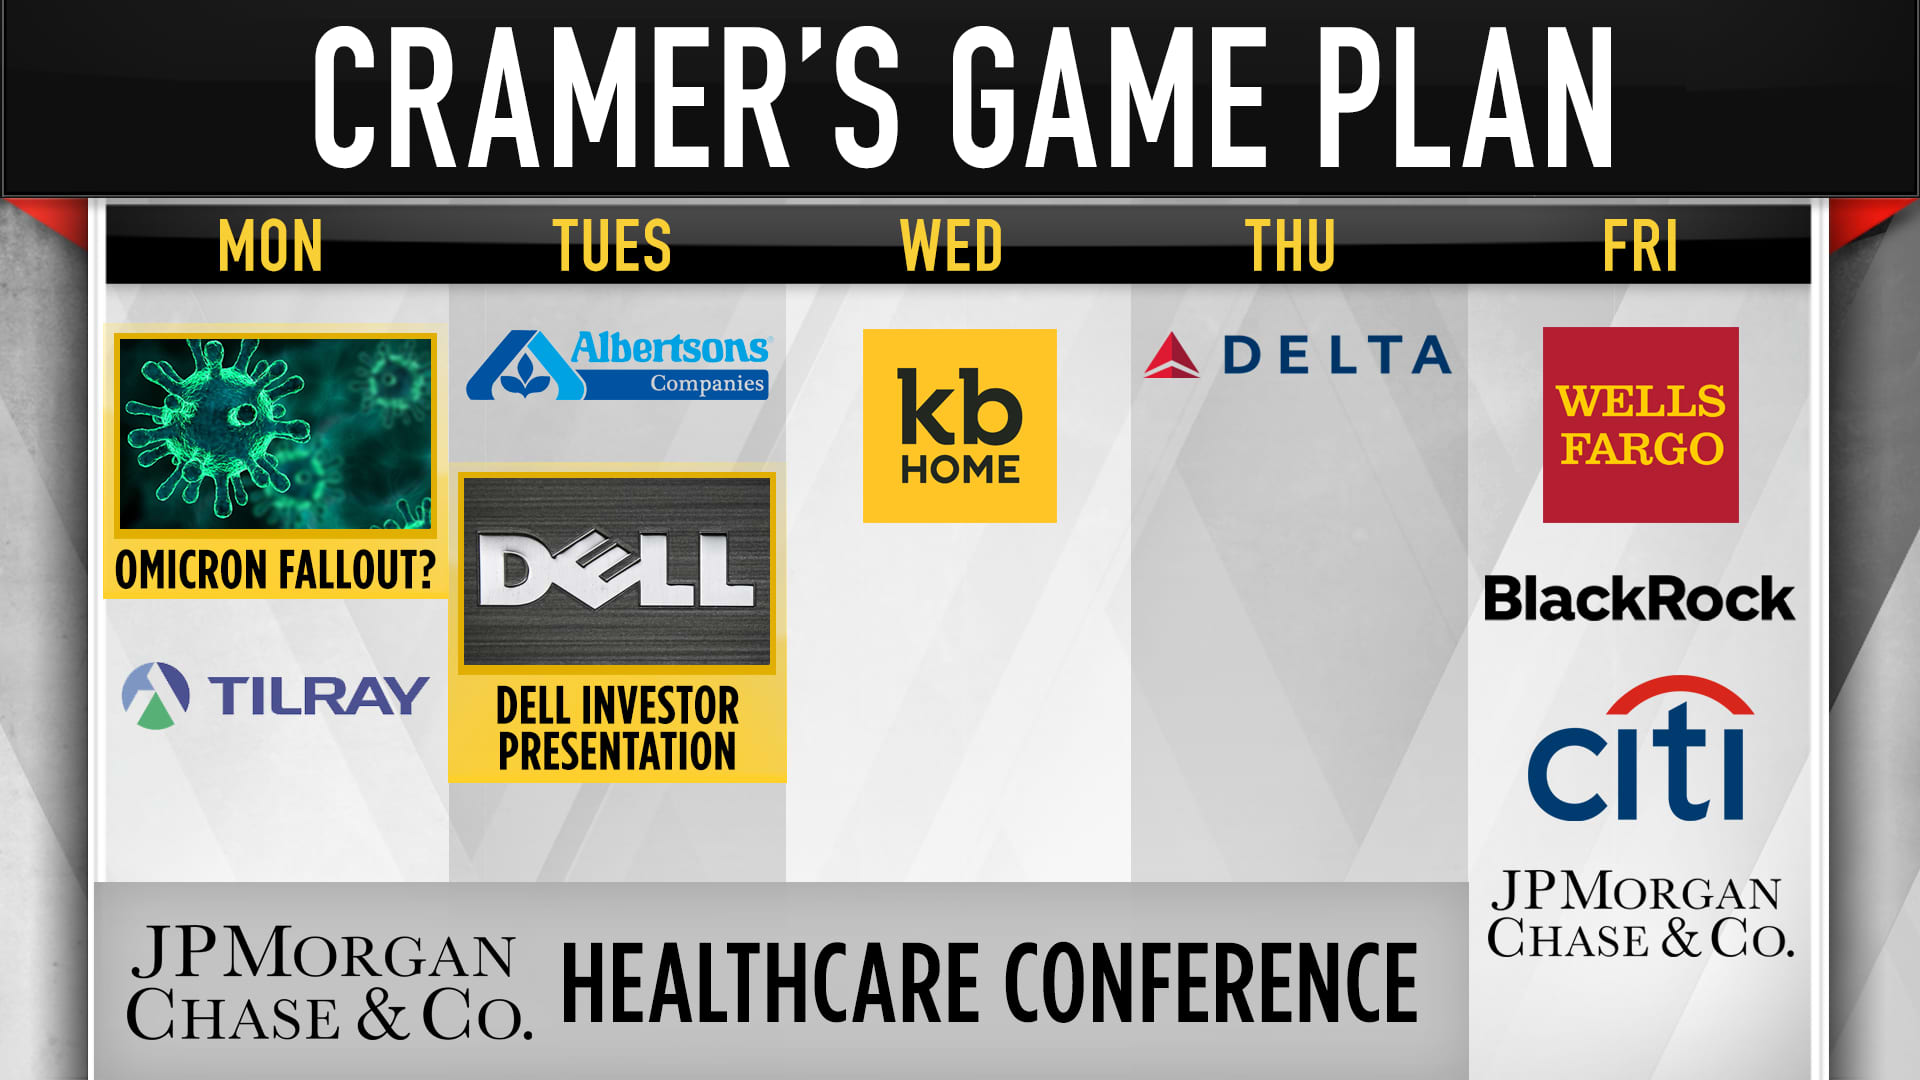 Jim Cramer's game plan for the trading week of Jan. 10.